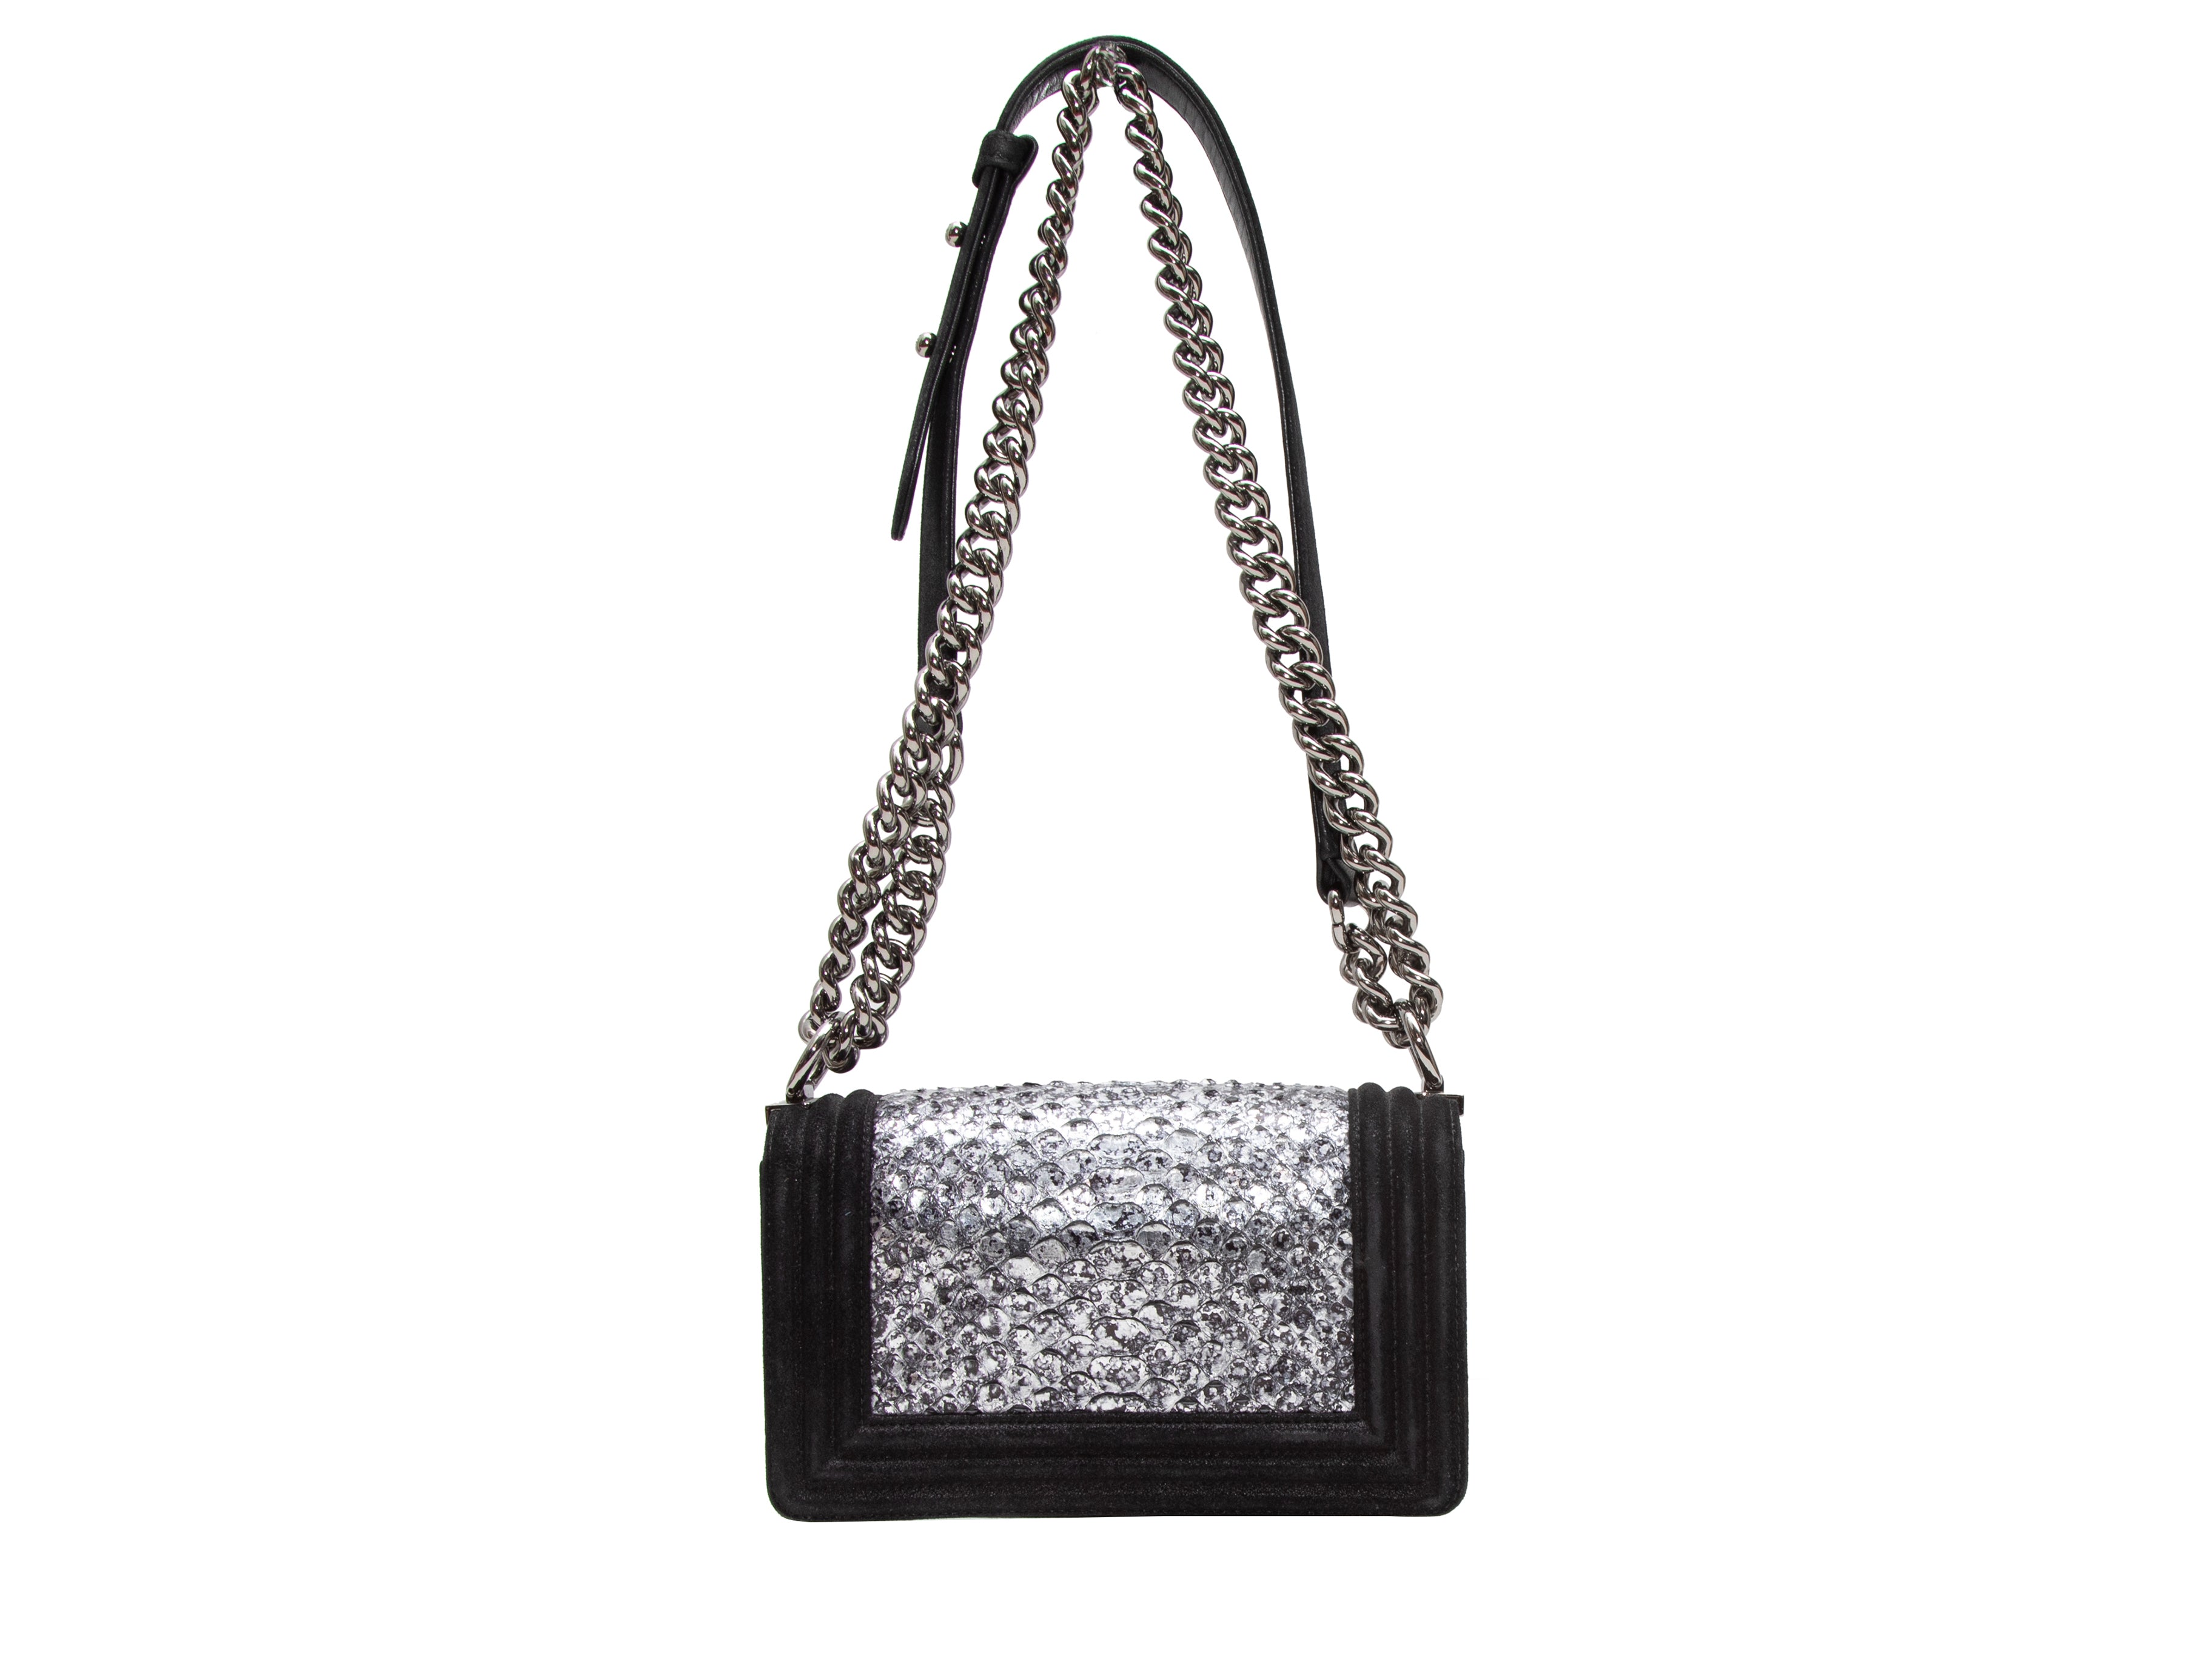 Brown Chanel Wild Stitch Lambskin Leather Shoulder Bag – Designer Revival